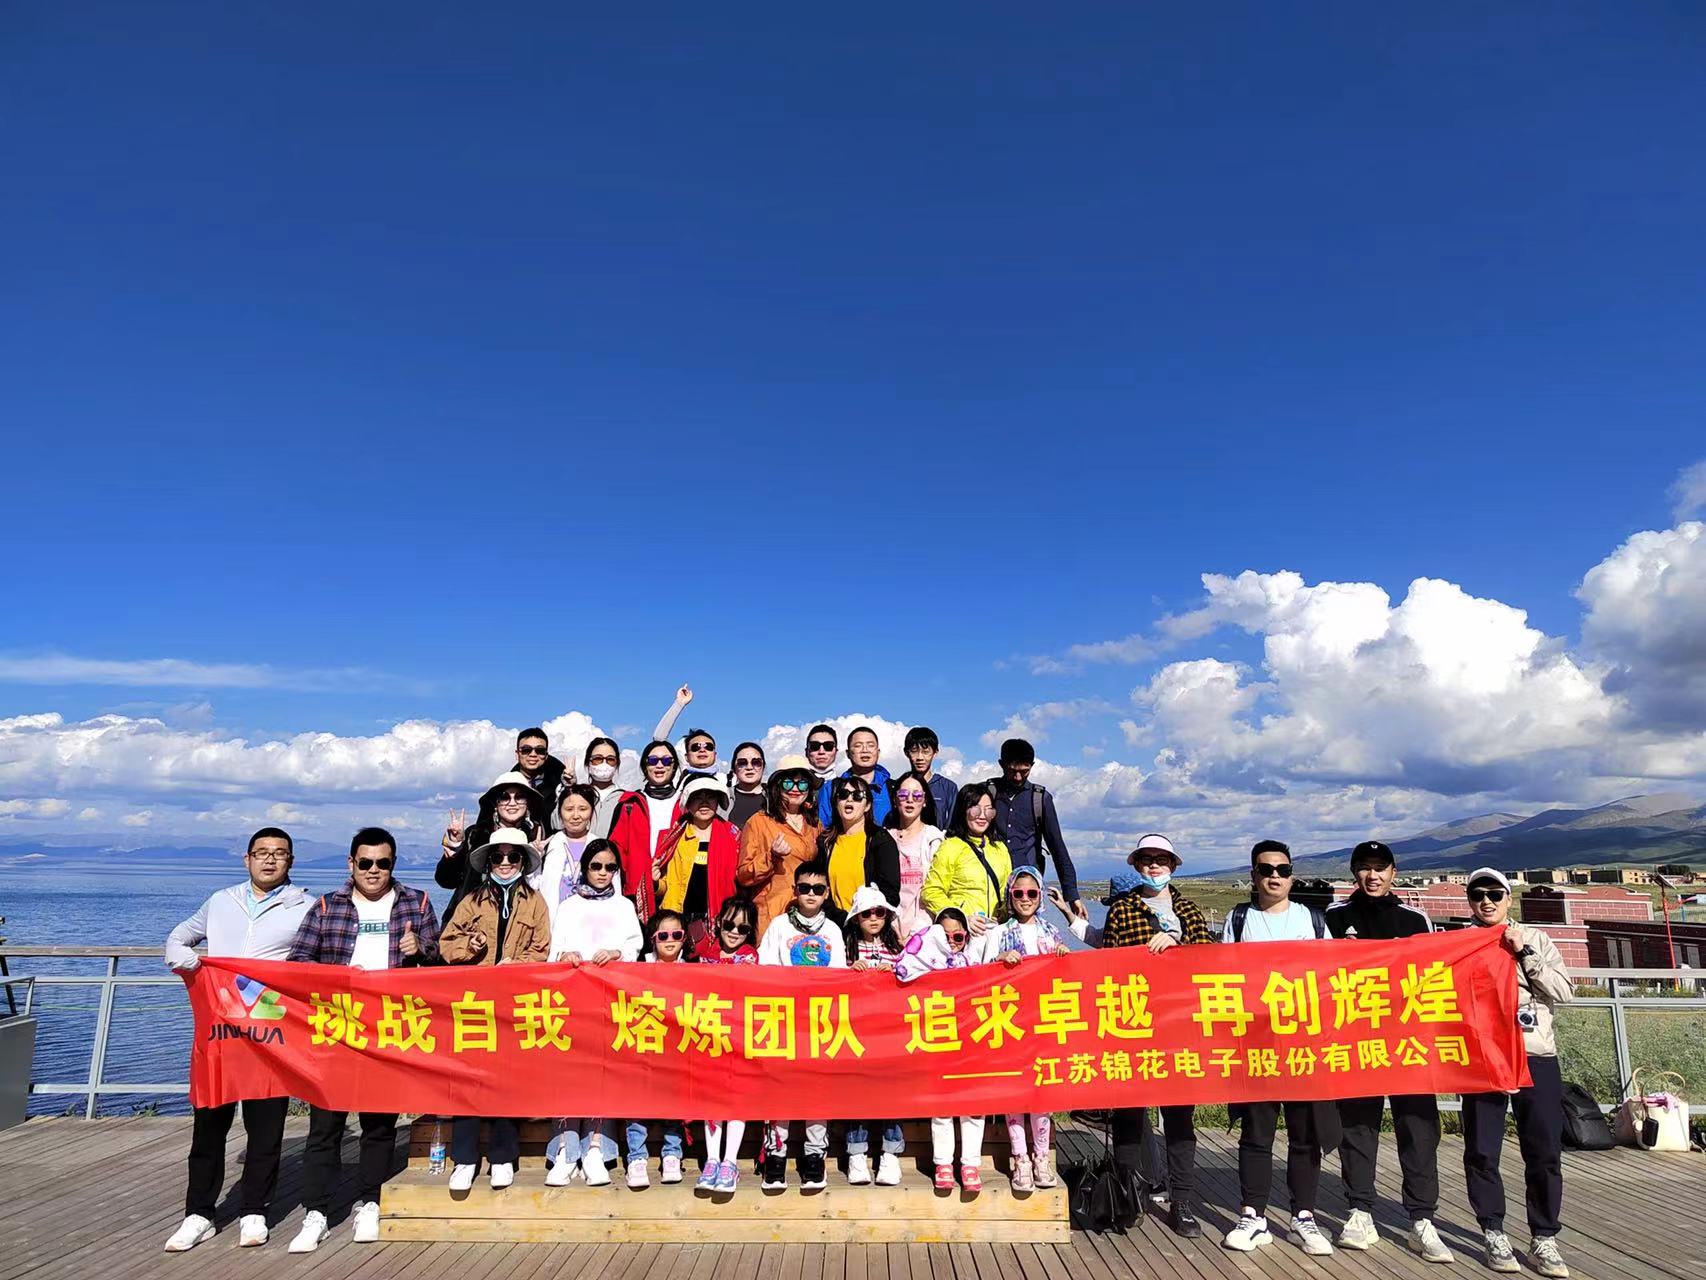 ¡CONSTRUCCIÓN DE EQUIPOS! - Turismo anual de visitas al noroeste de China